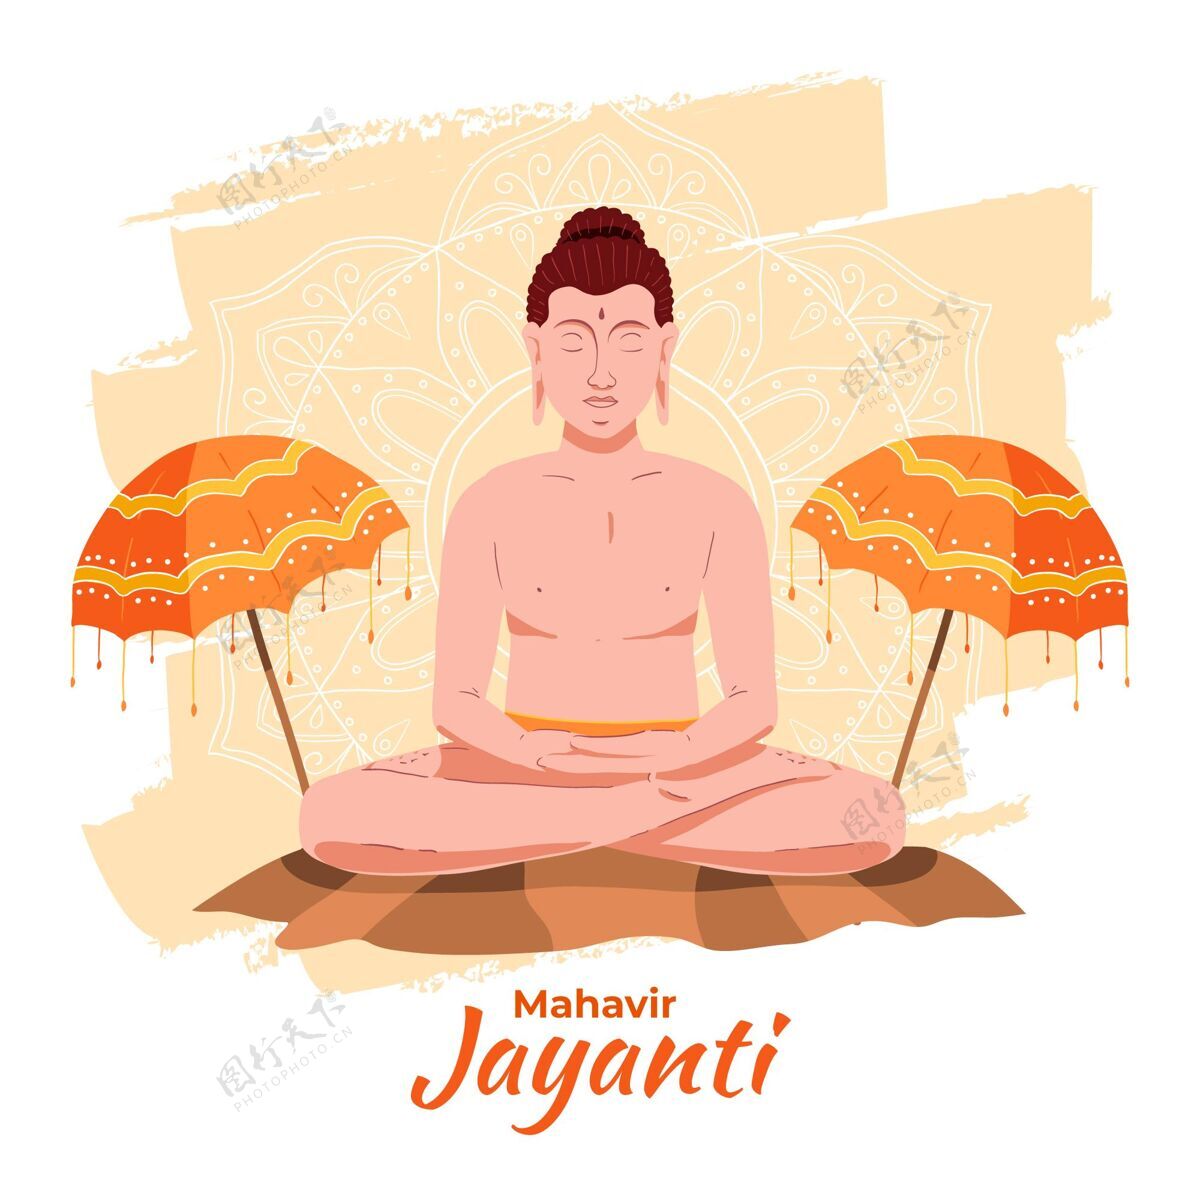 宗教手绘玛哈维·贾扬蒂插图印度节日手绘